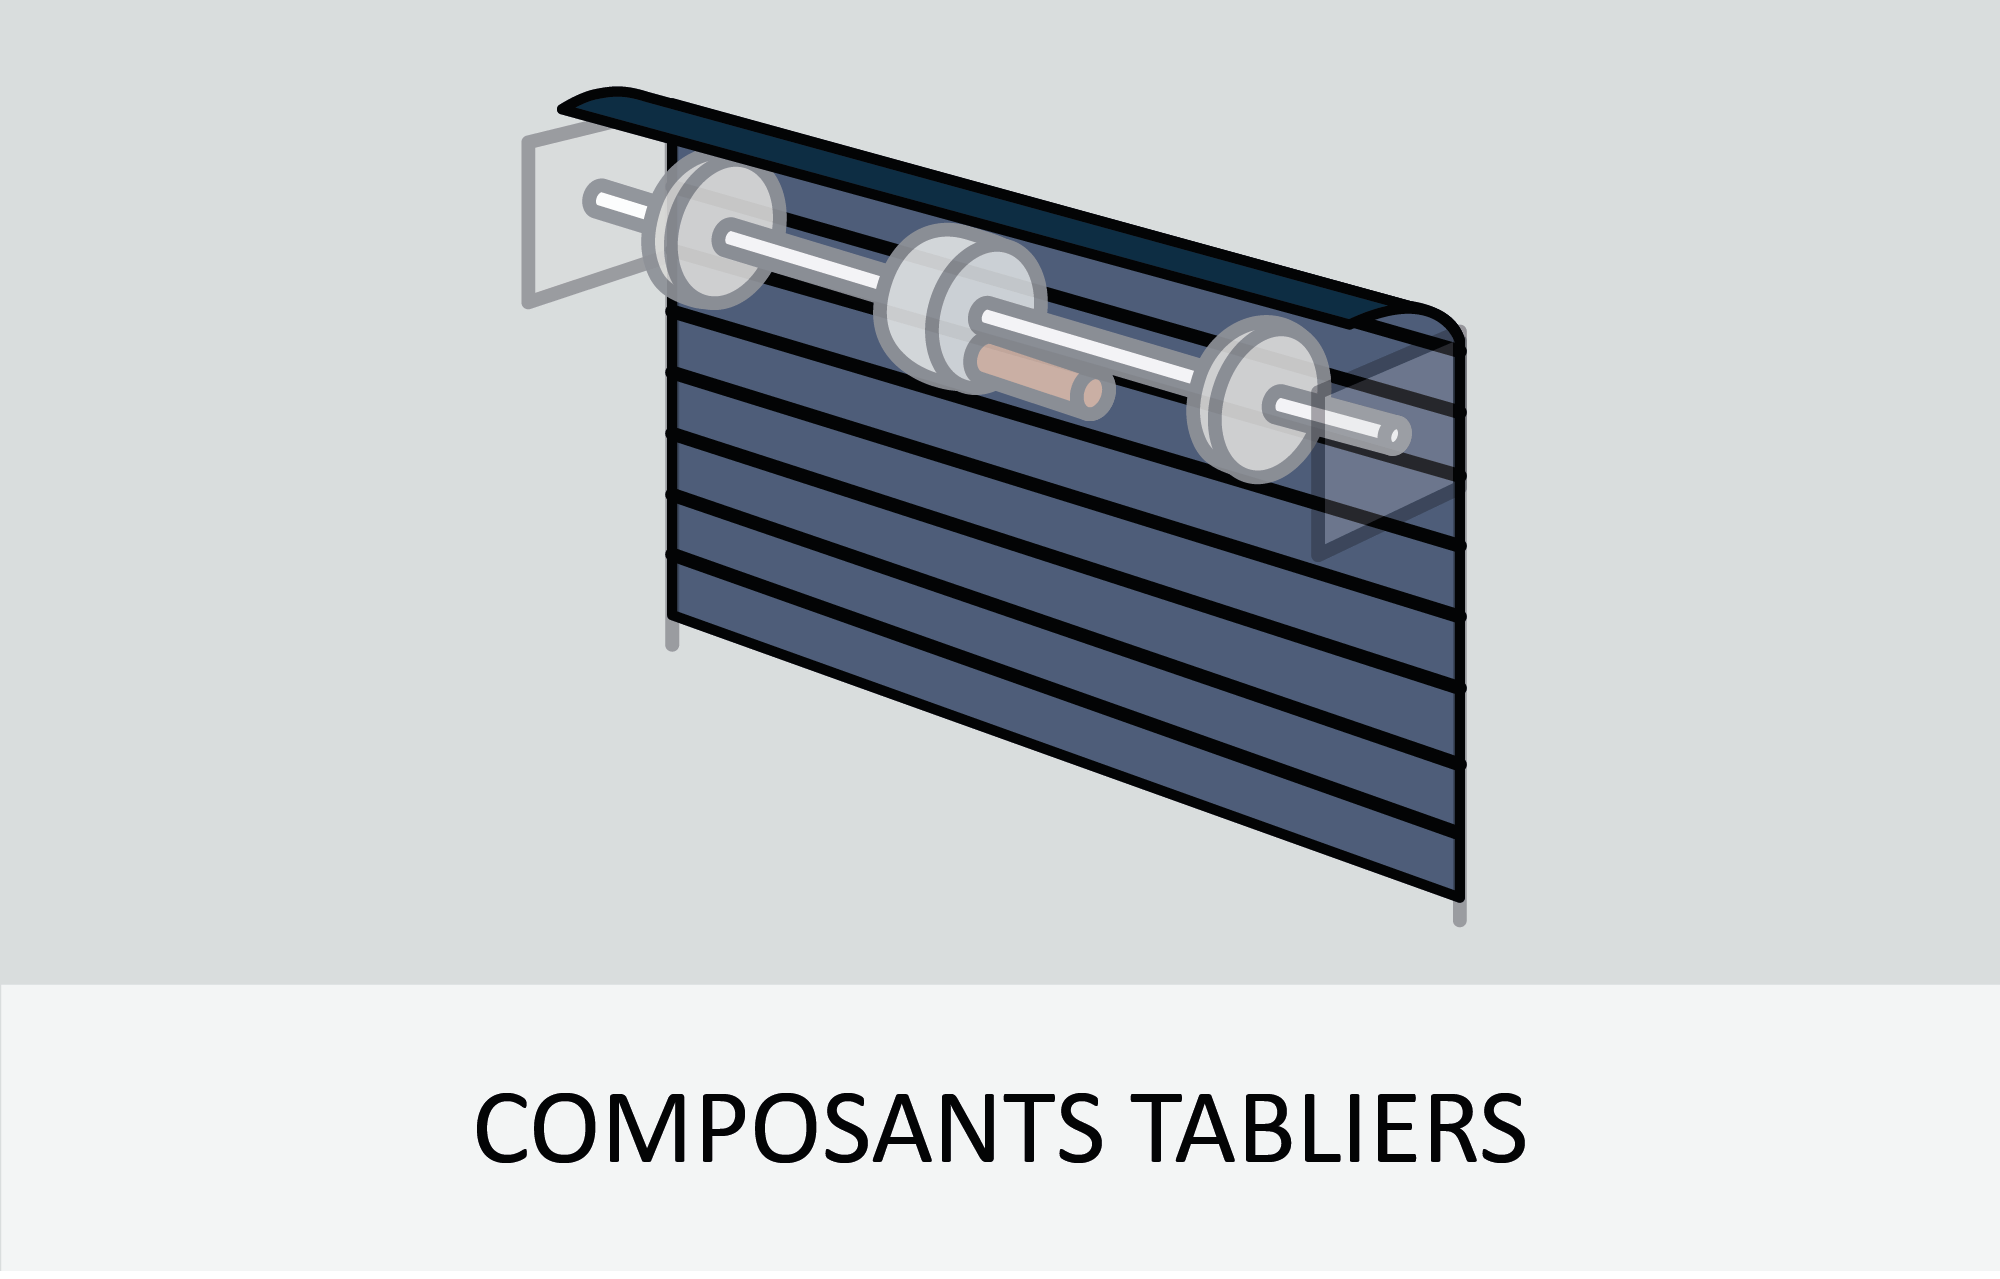 Composants tabliers des rideaux métalliques